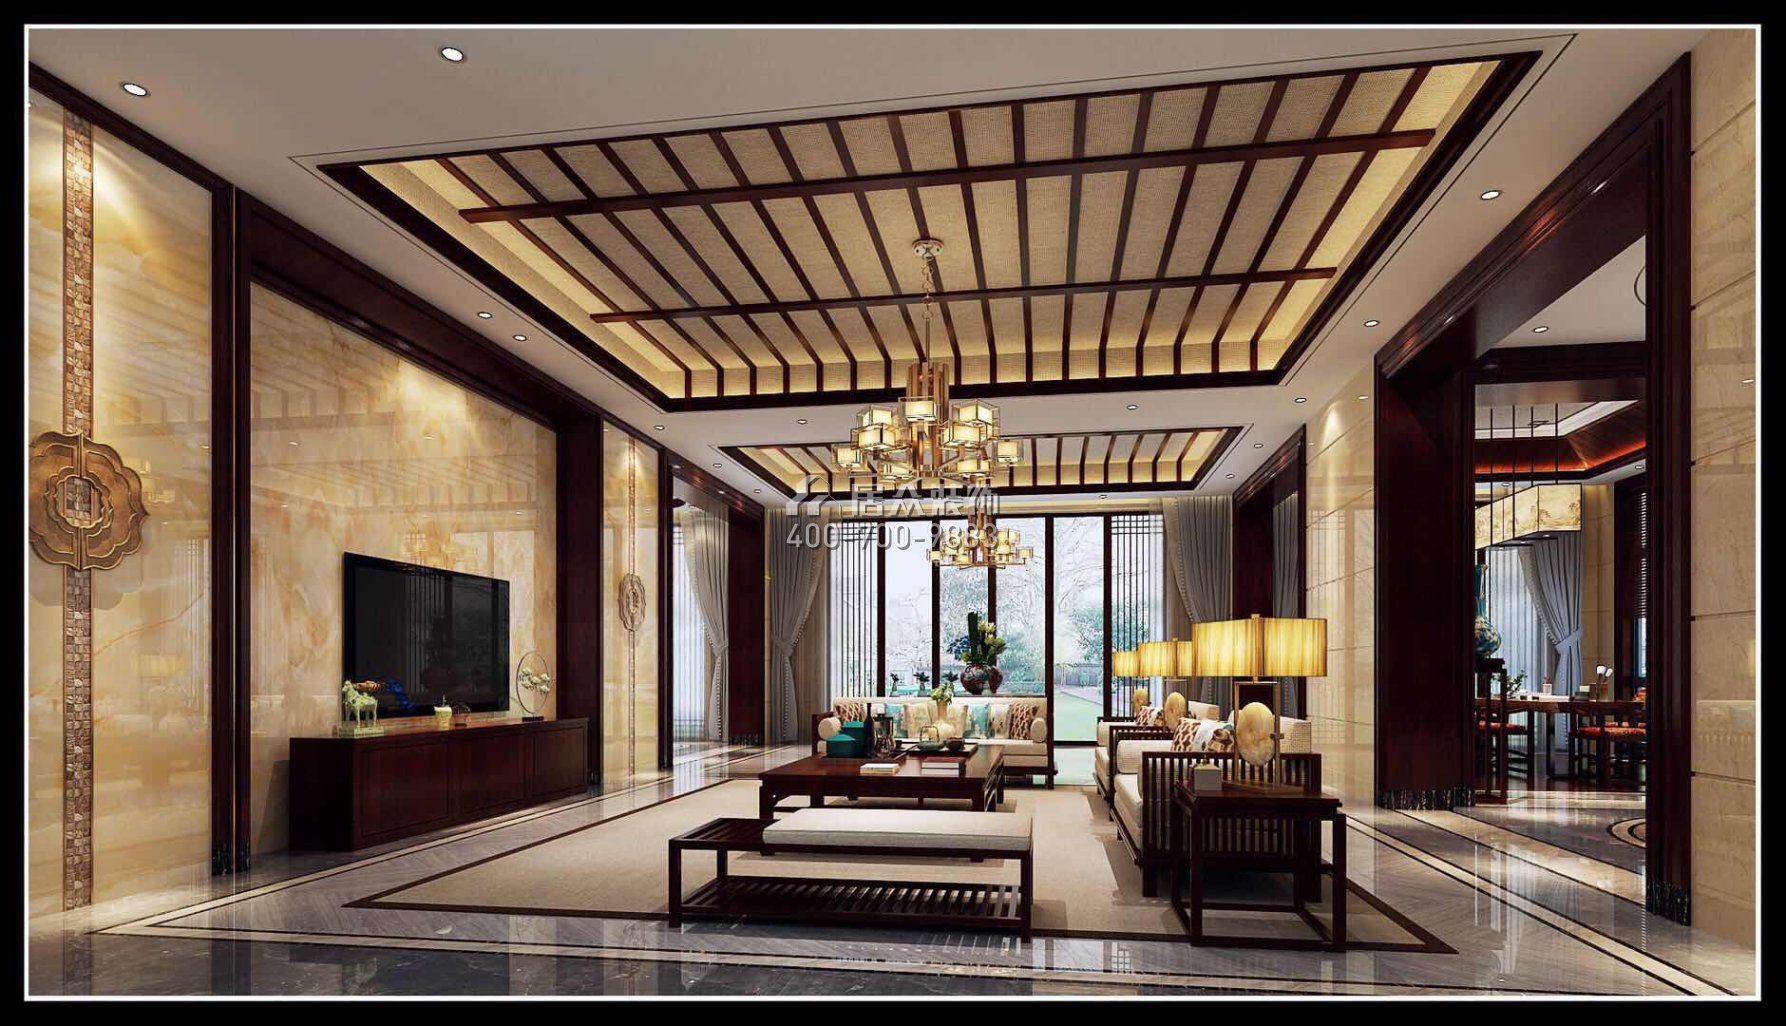 翡翠松山湖800平方米中式風格別墅戶型客廳裝修效果圖